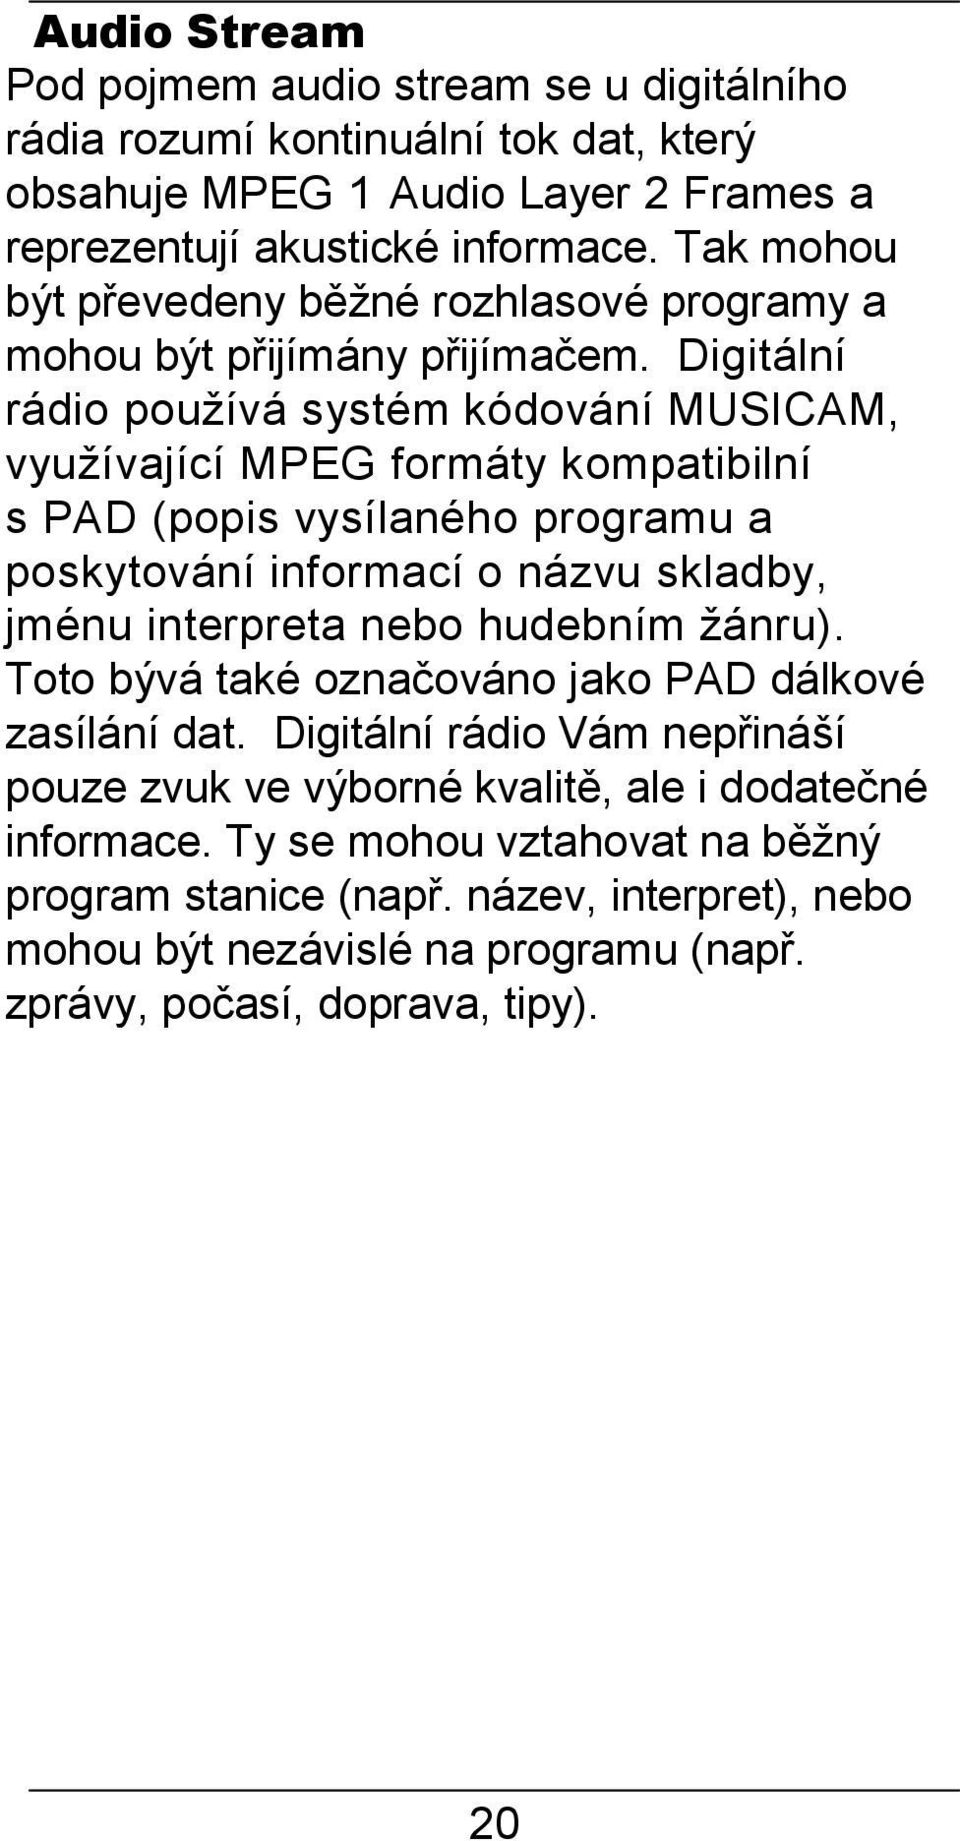 Digitální rádio používá systém kódování MUSICAM, využívající MPEG formáty kompatibilní s PAD (popis vysílaného programu a poskytování informací o názvu skladby, jménu interpreta nebo